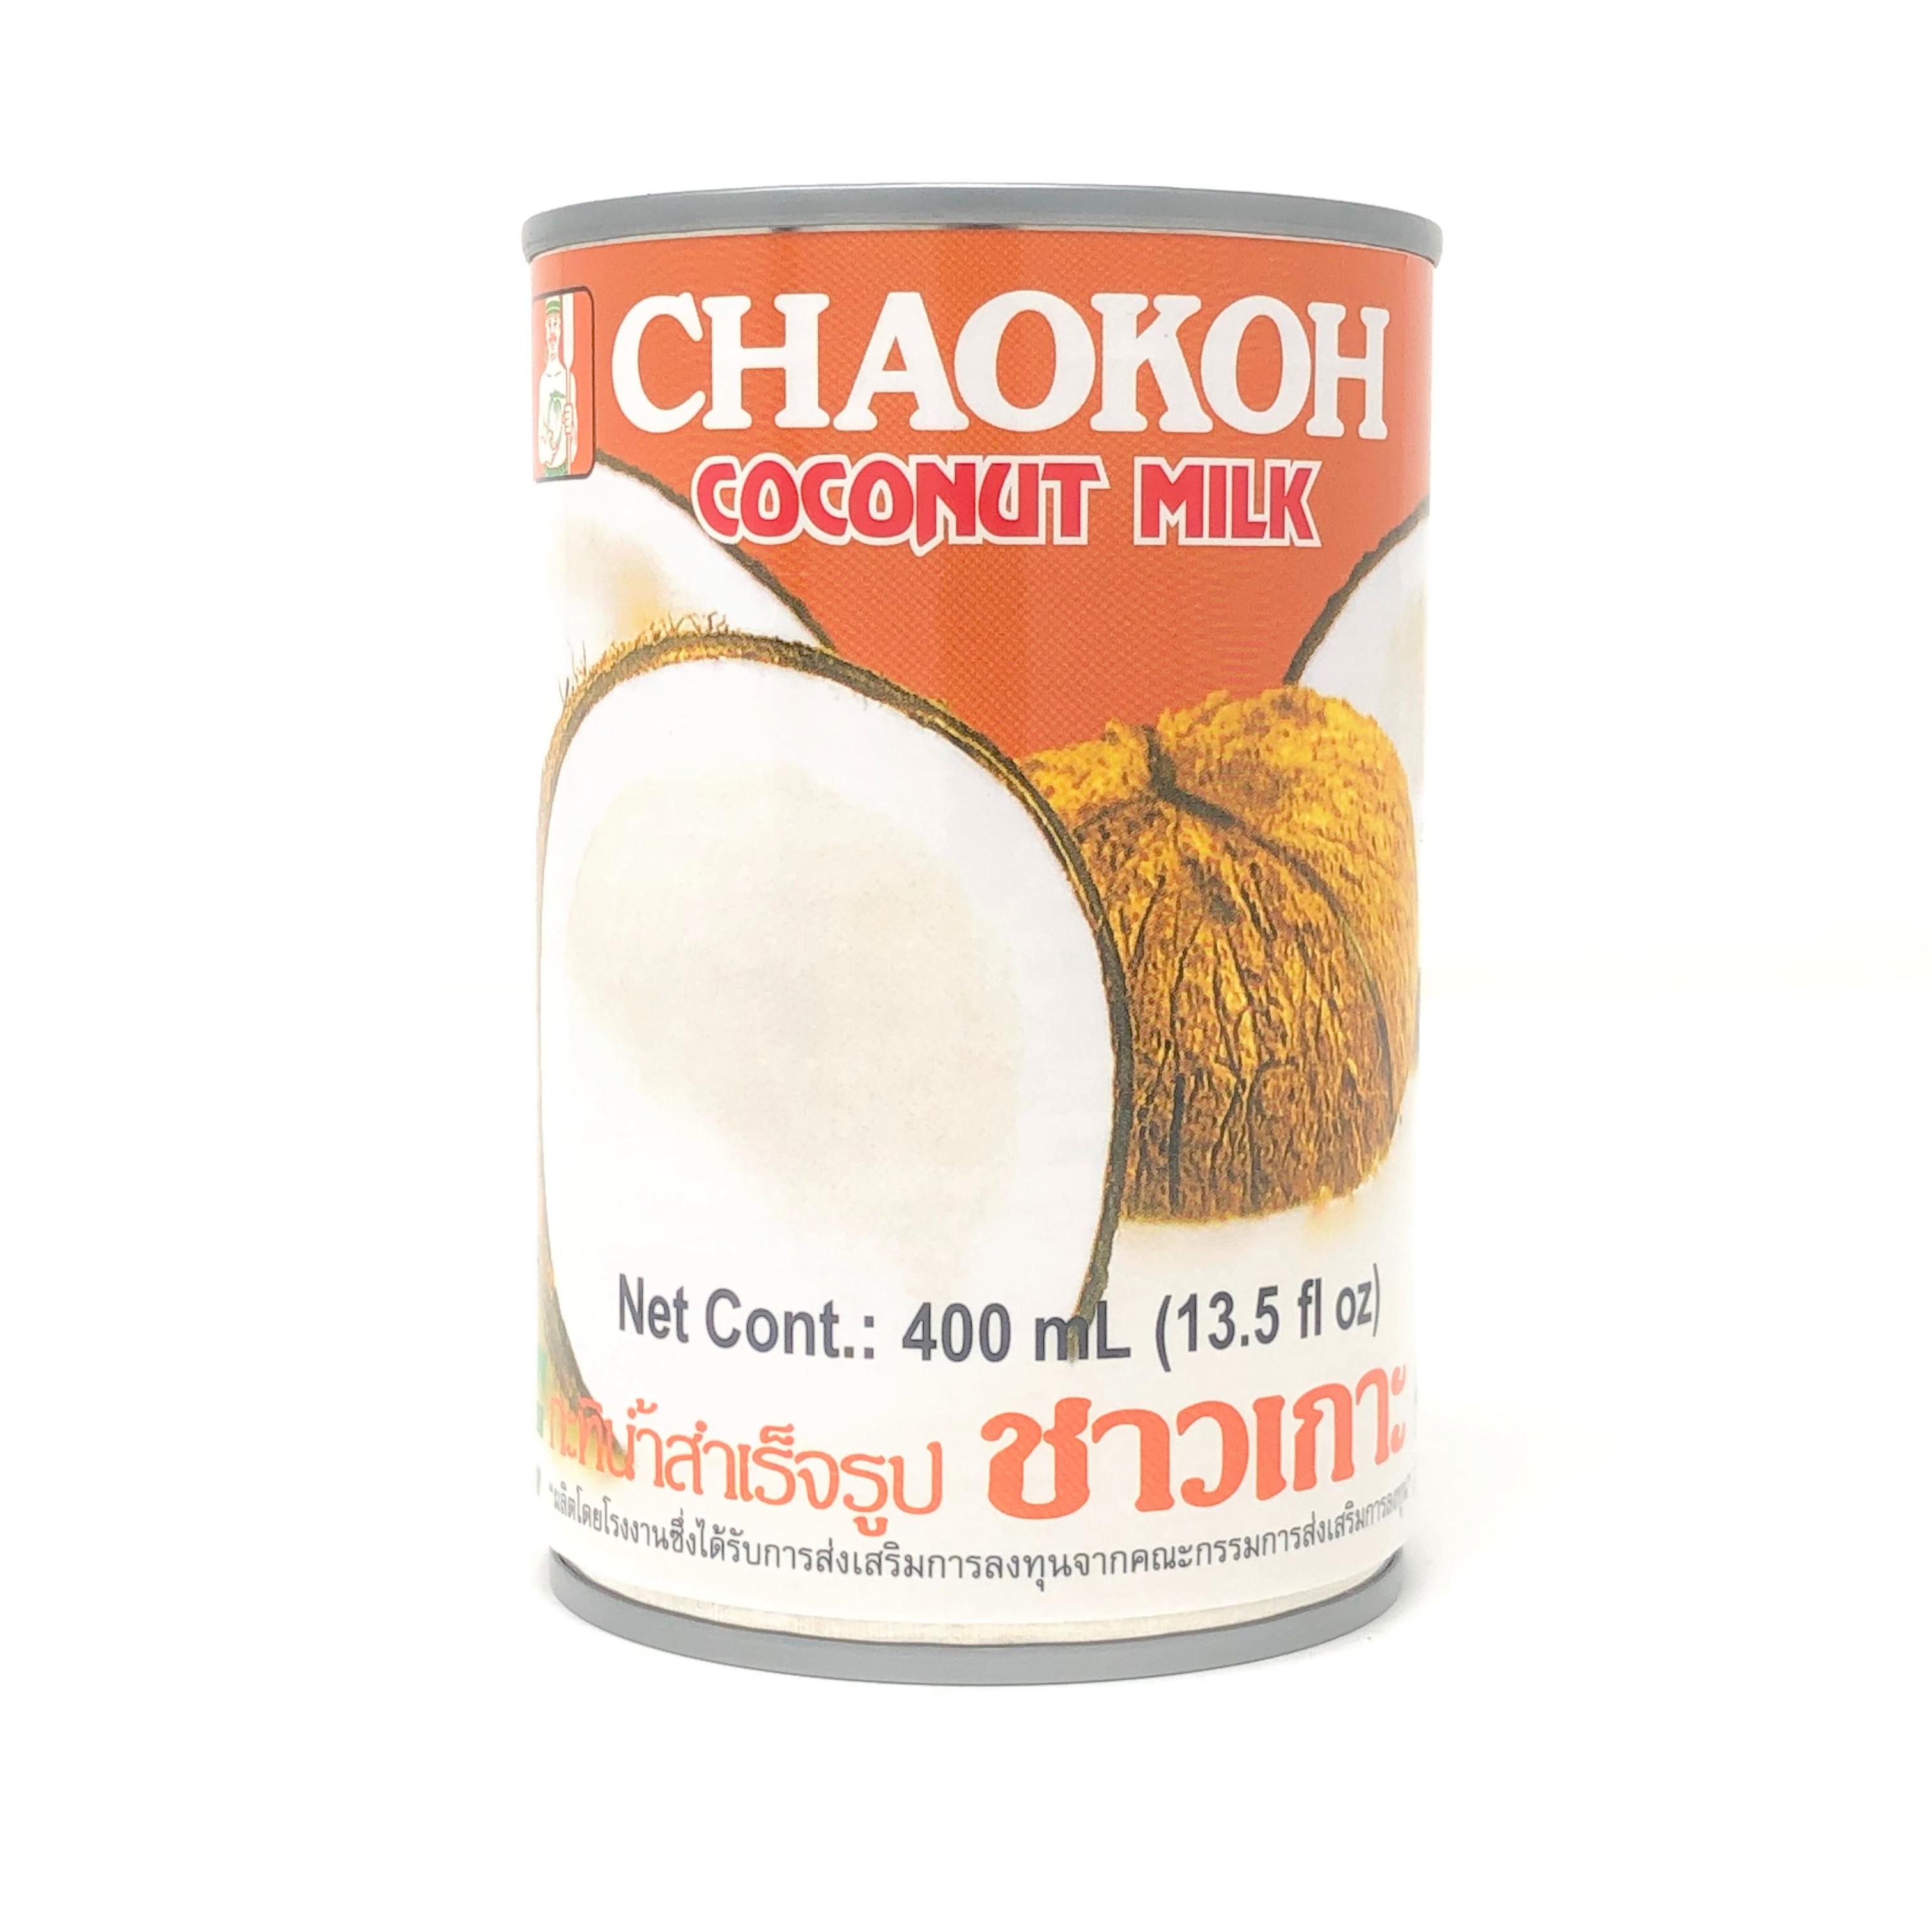 タイ食材 雑貨 通販 タイの市場 アイタイランド ココナツ製品